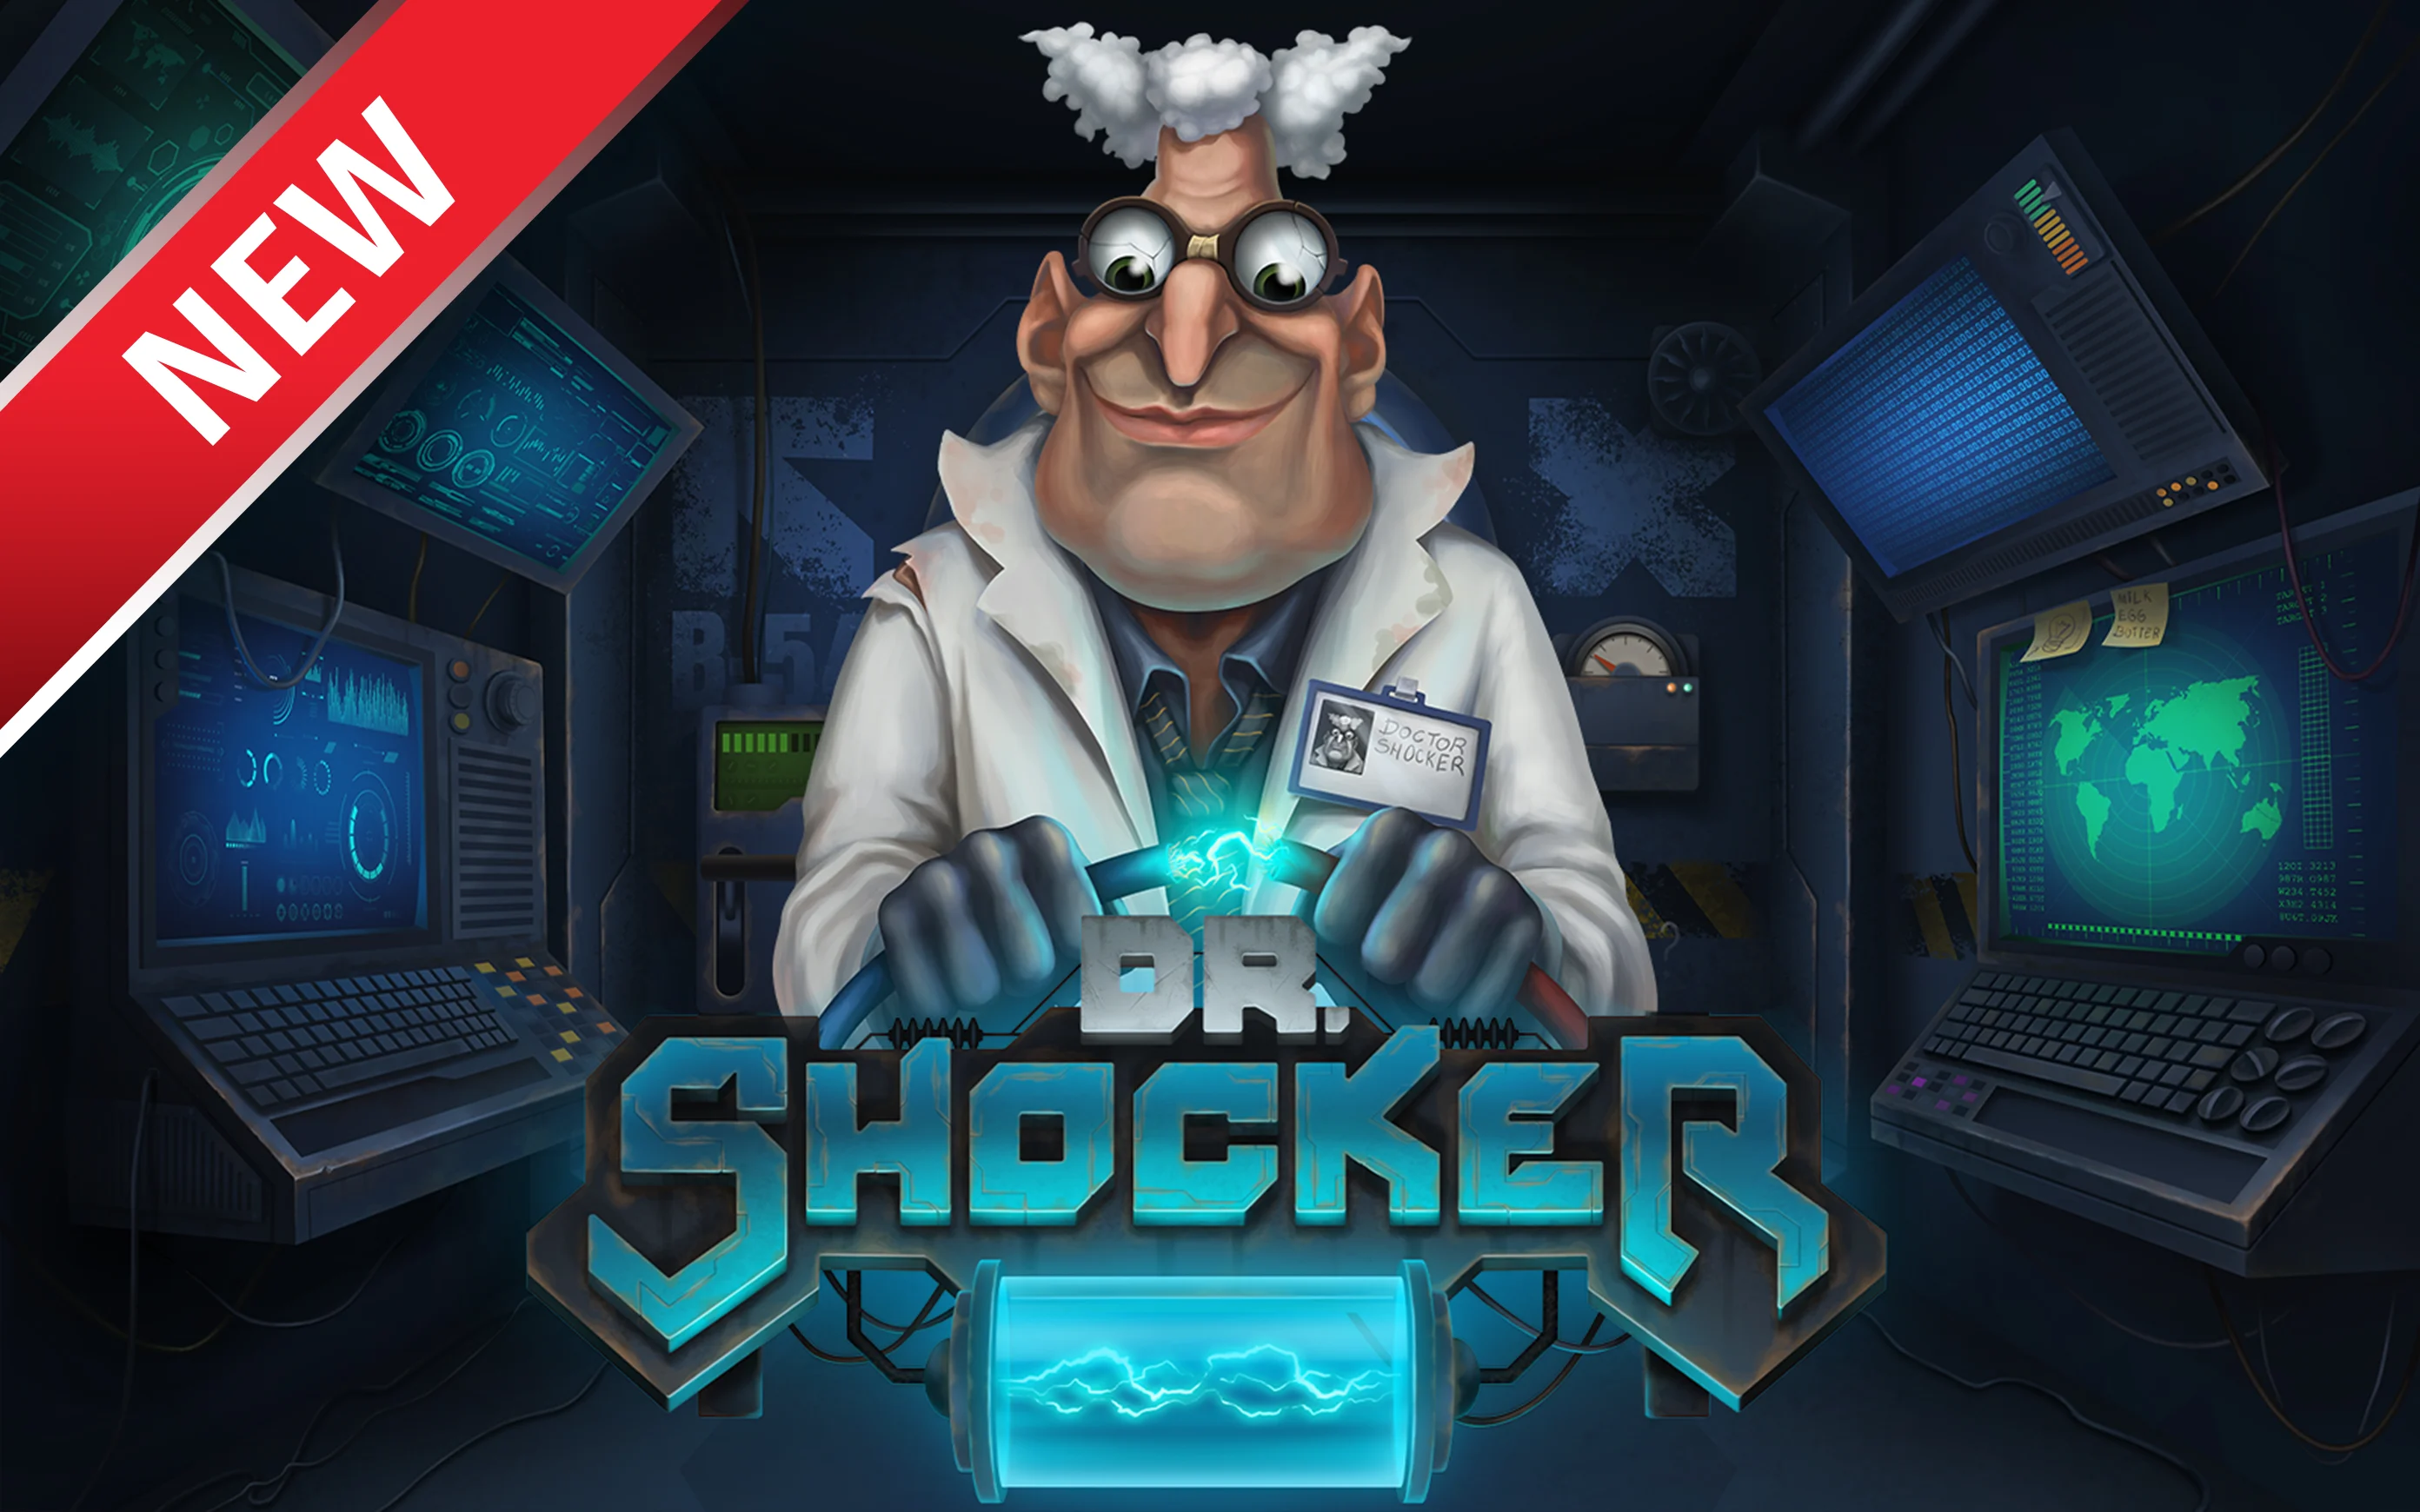 Zagraj w Dr. Shocker w kasynie online Starcasino.be